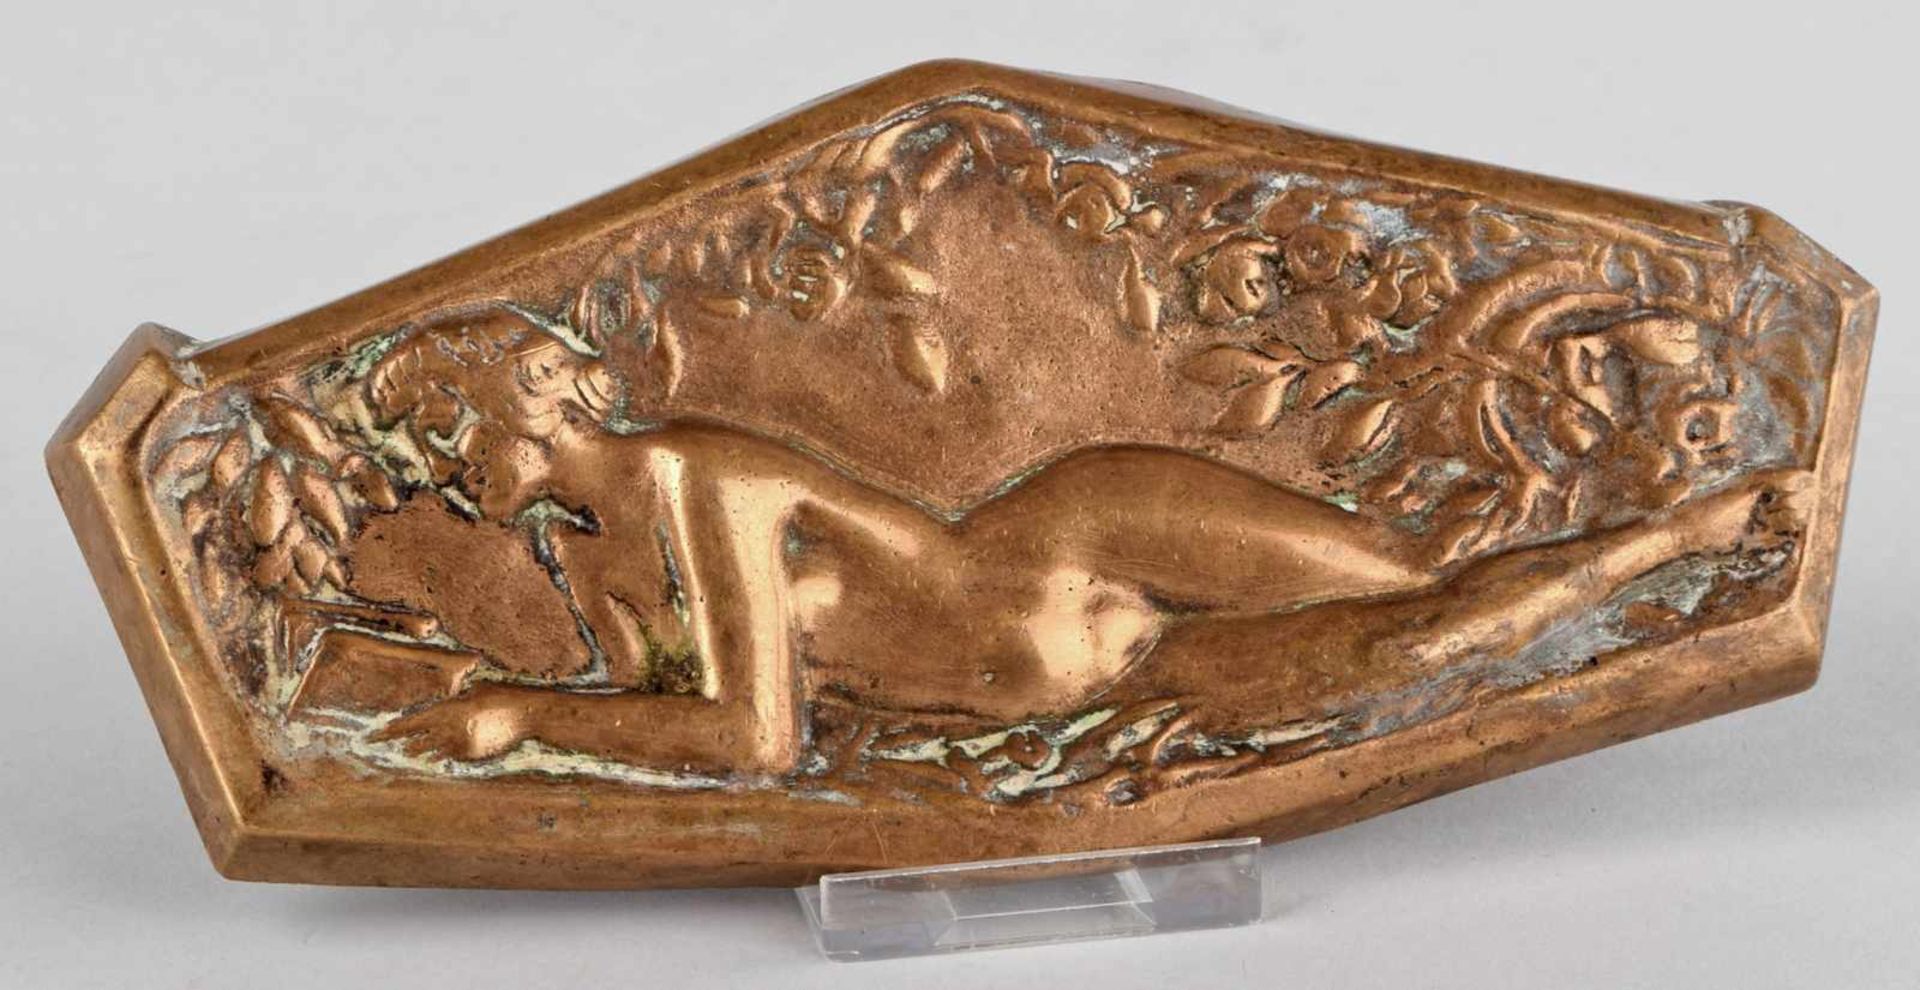 Jugendstil-Visitenkartenschale Bronze, goldfarben patiniert, längliche Form sechseckig konturiert, - Bild 2 aus 2